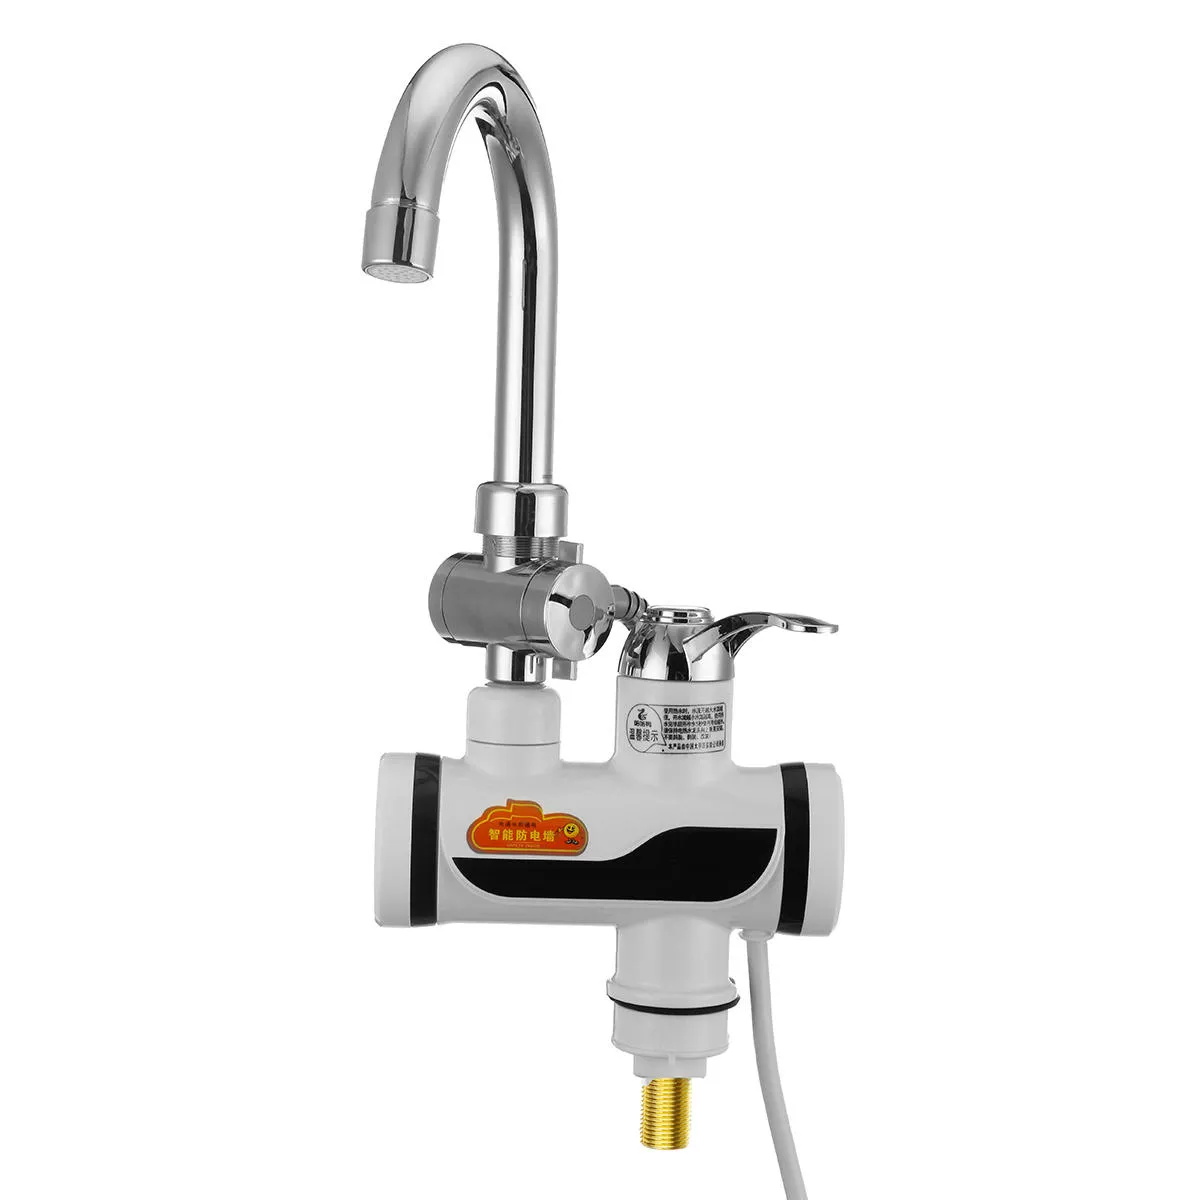 Natychmiastowy elektryczny podgrzewacz wody szybki kran ogrzewania kran kuchenny zimny mikser kran LED Display203s